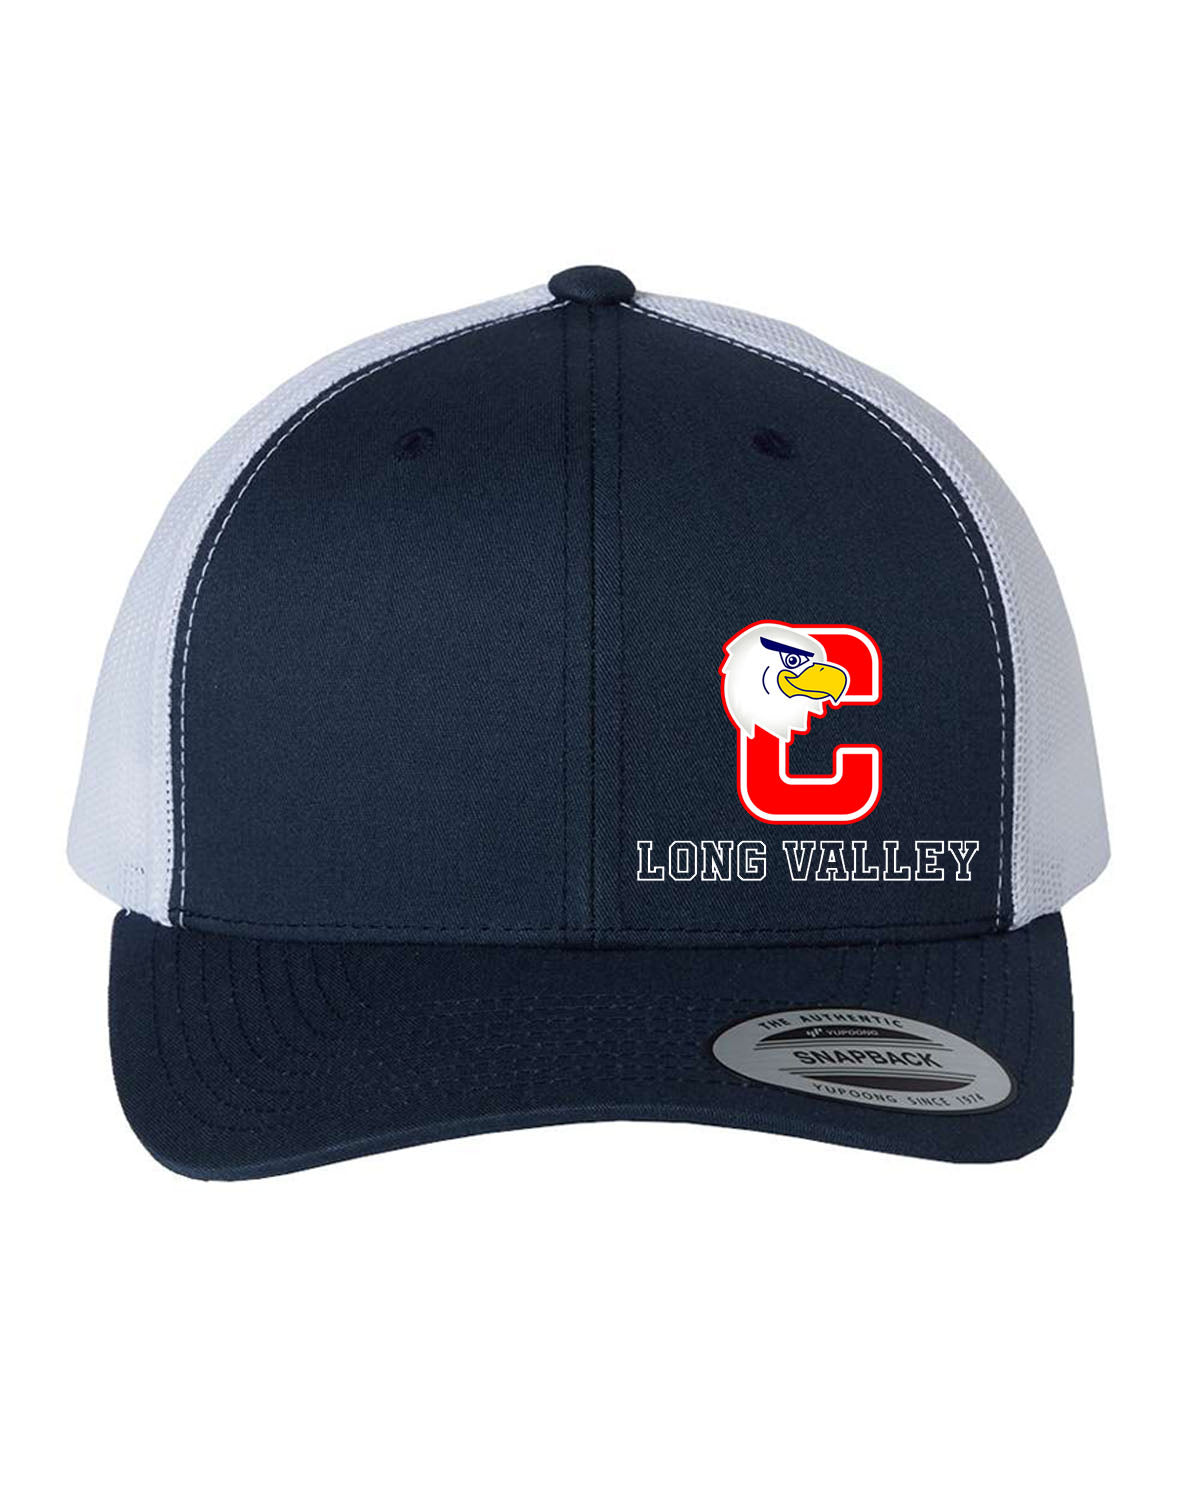 Cucinella Design 2 Trucker Hat